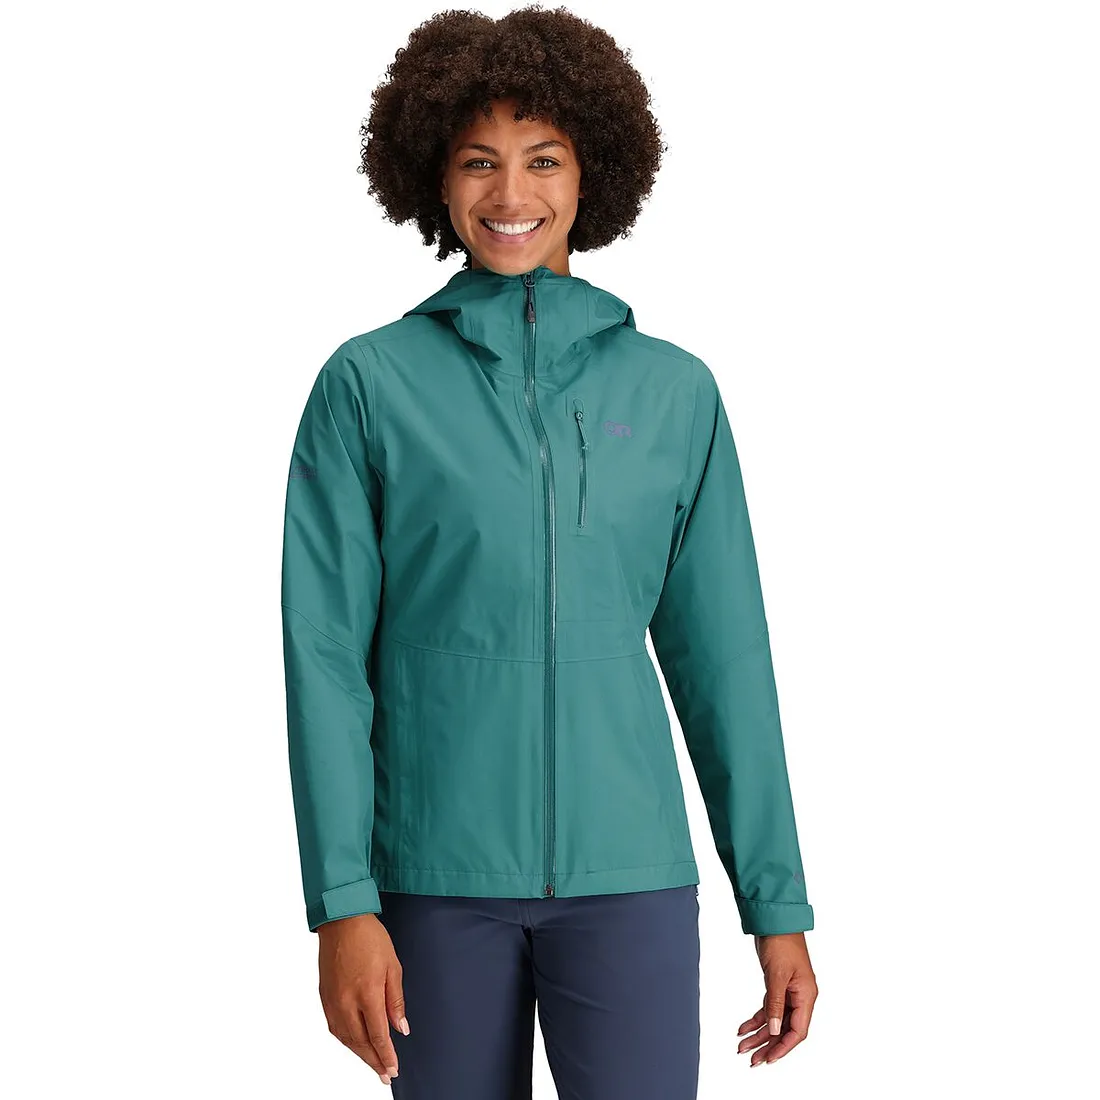 Outdoor Research Aspire II Women's Rain Jacket